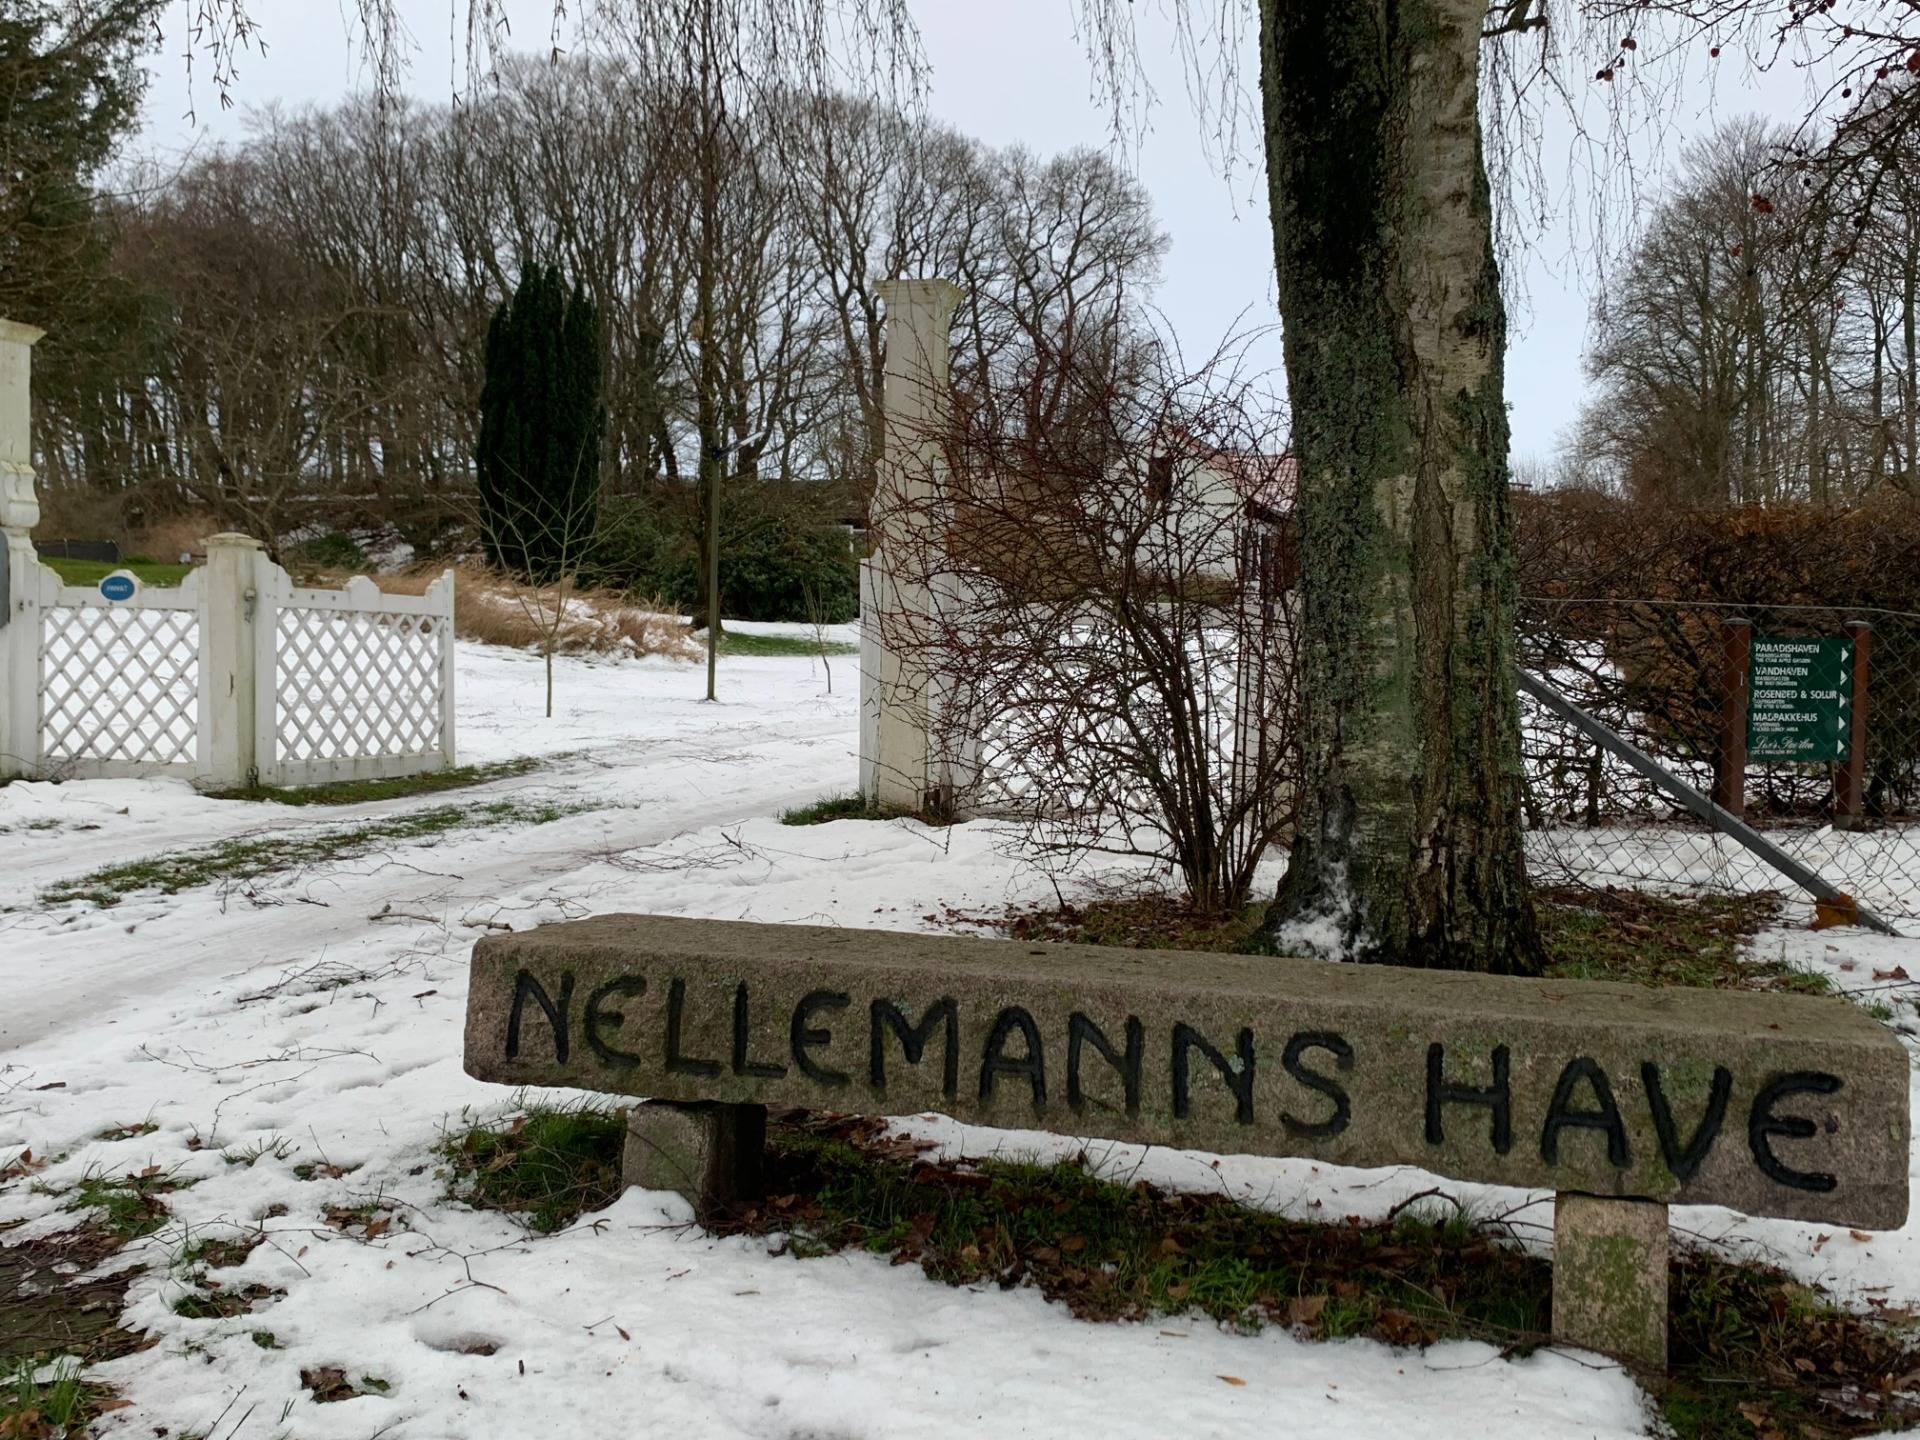 Nellemann’s Garden